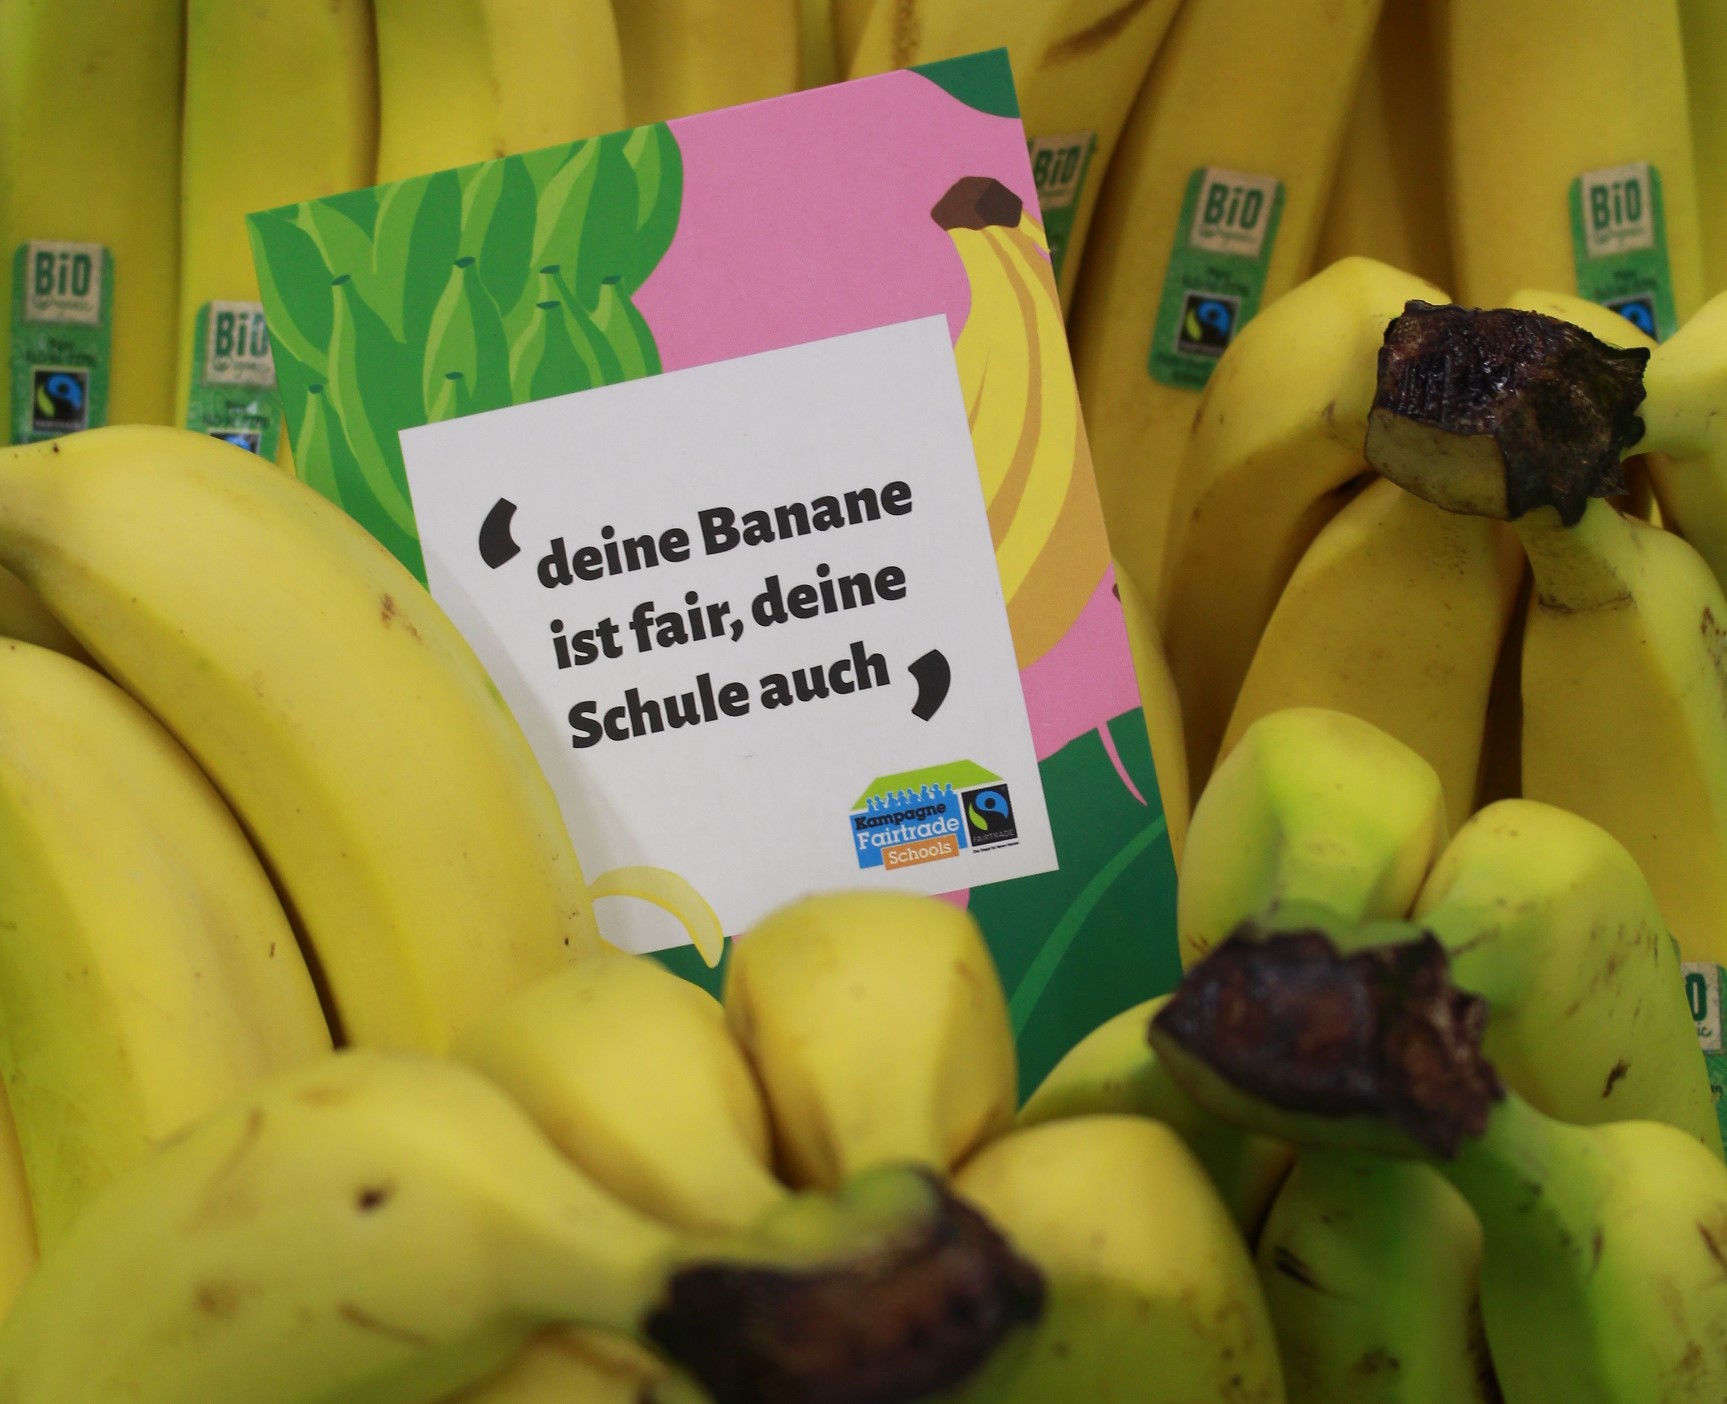 Das Bild zeigt Bananen mit dem 